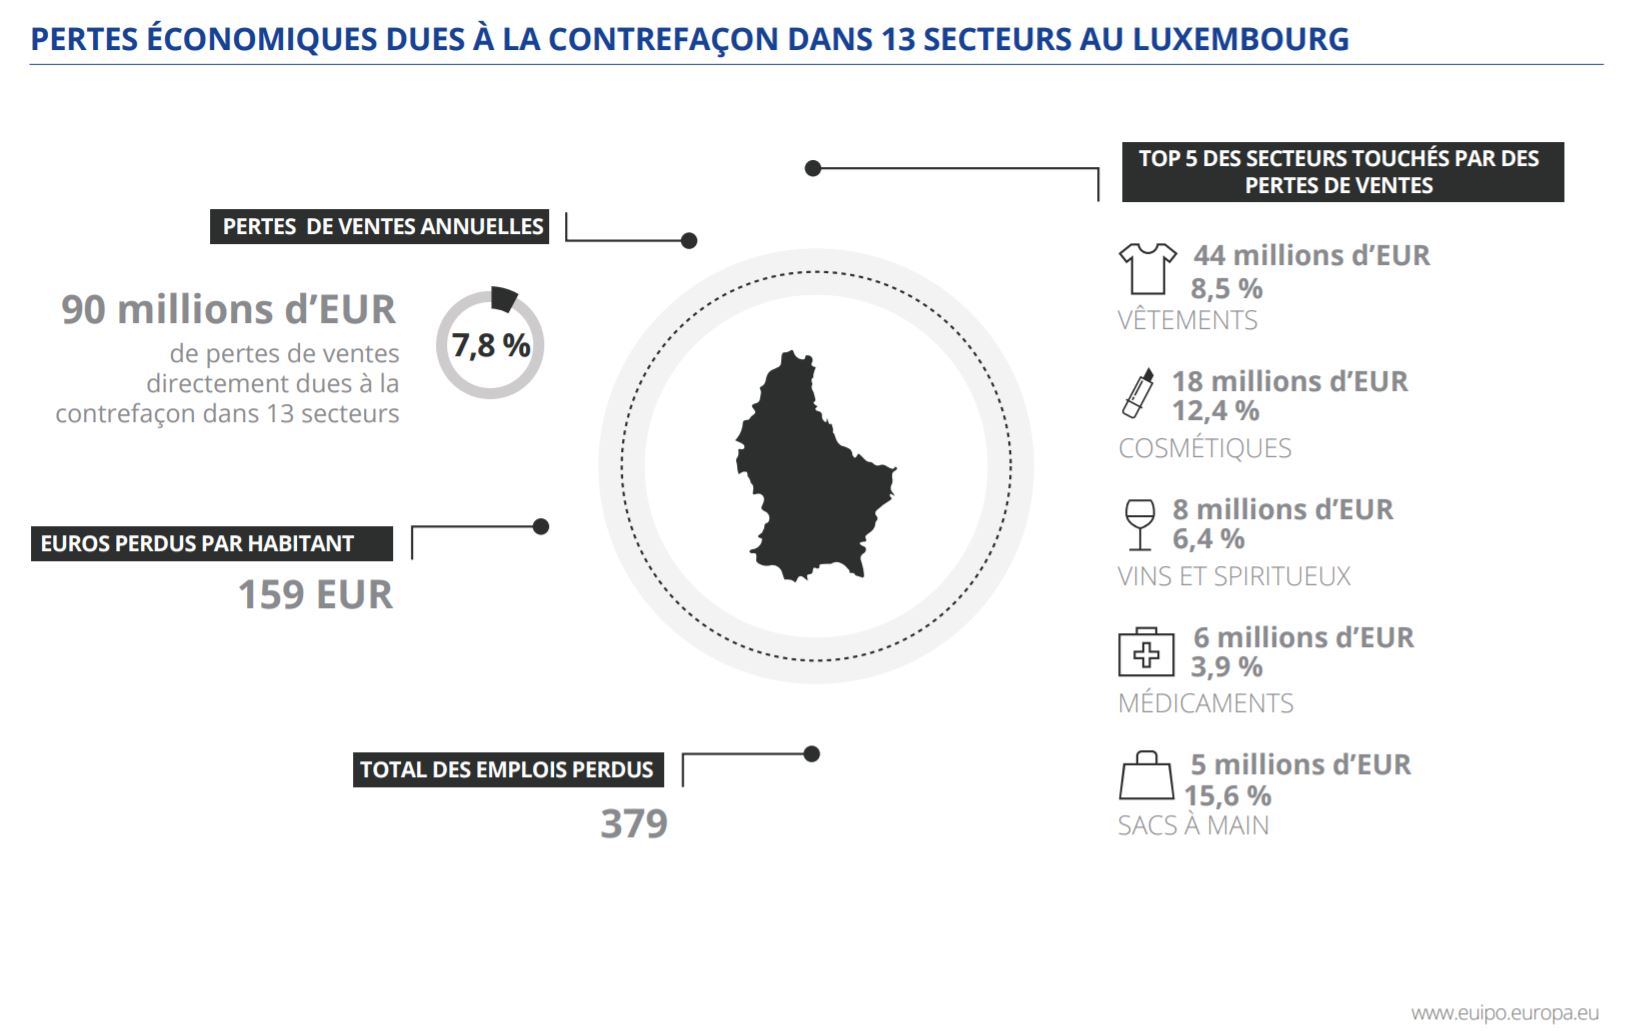 Contrefaçons secteurs Luxembourg